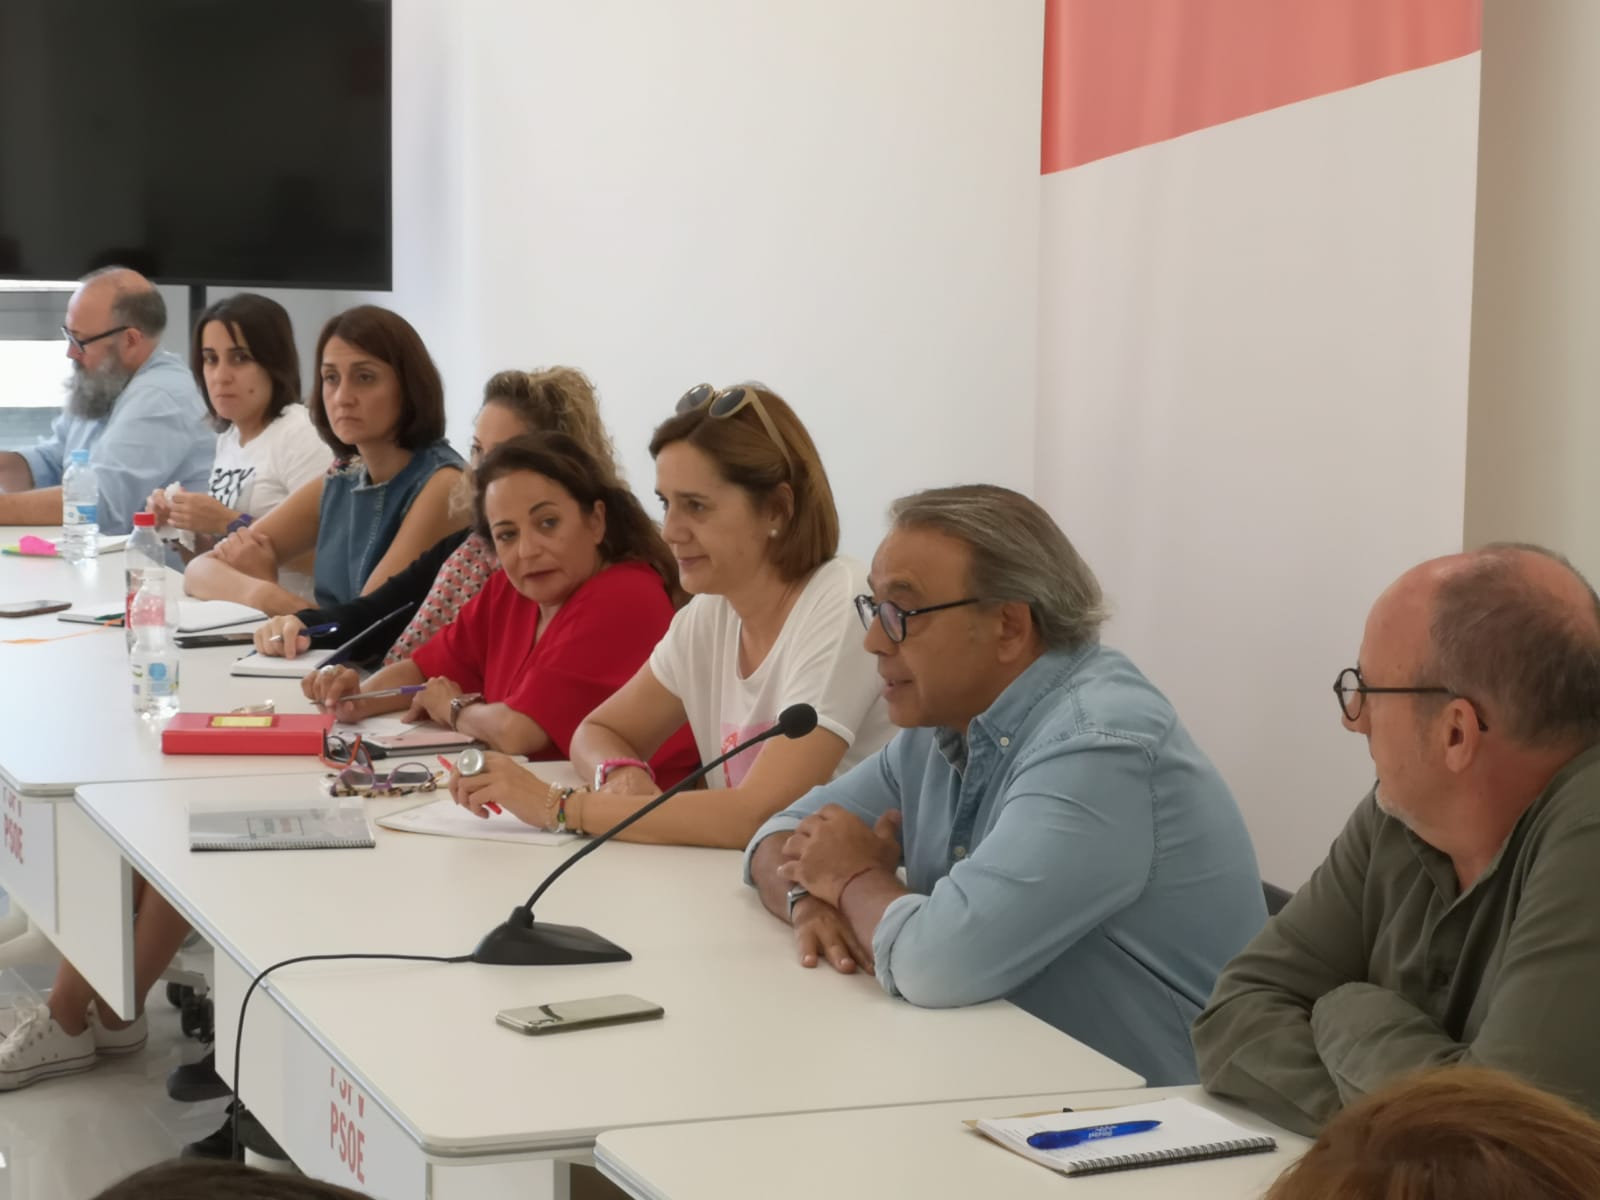 En este momento estás viendo Inma Sánchez: “El empeño de Ximo Puig por construir aulas dignas ha permitido rescatar a 7.000 alumnos de los barracones del PP”